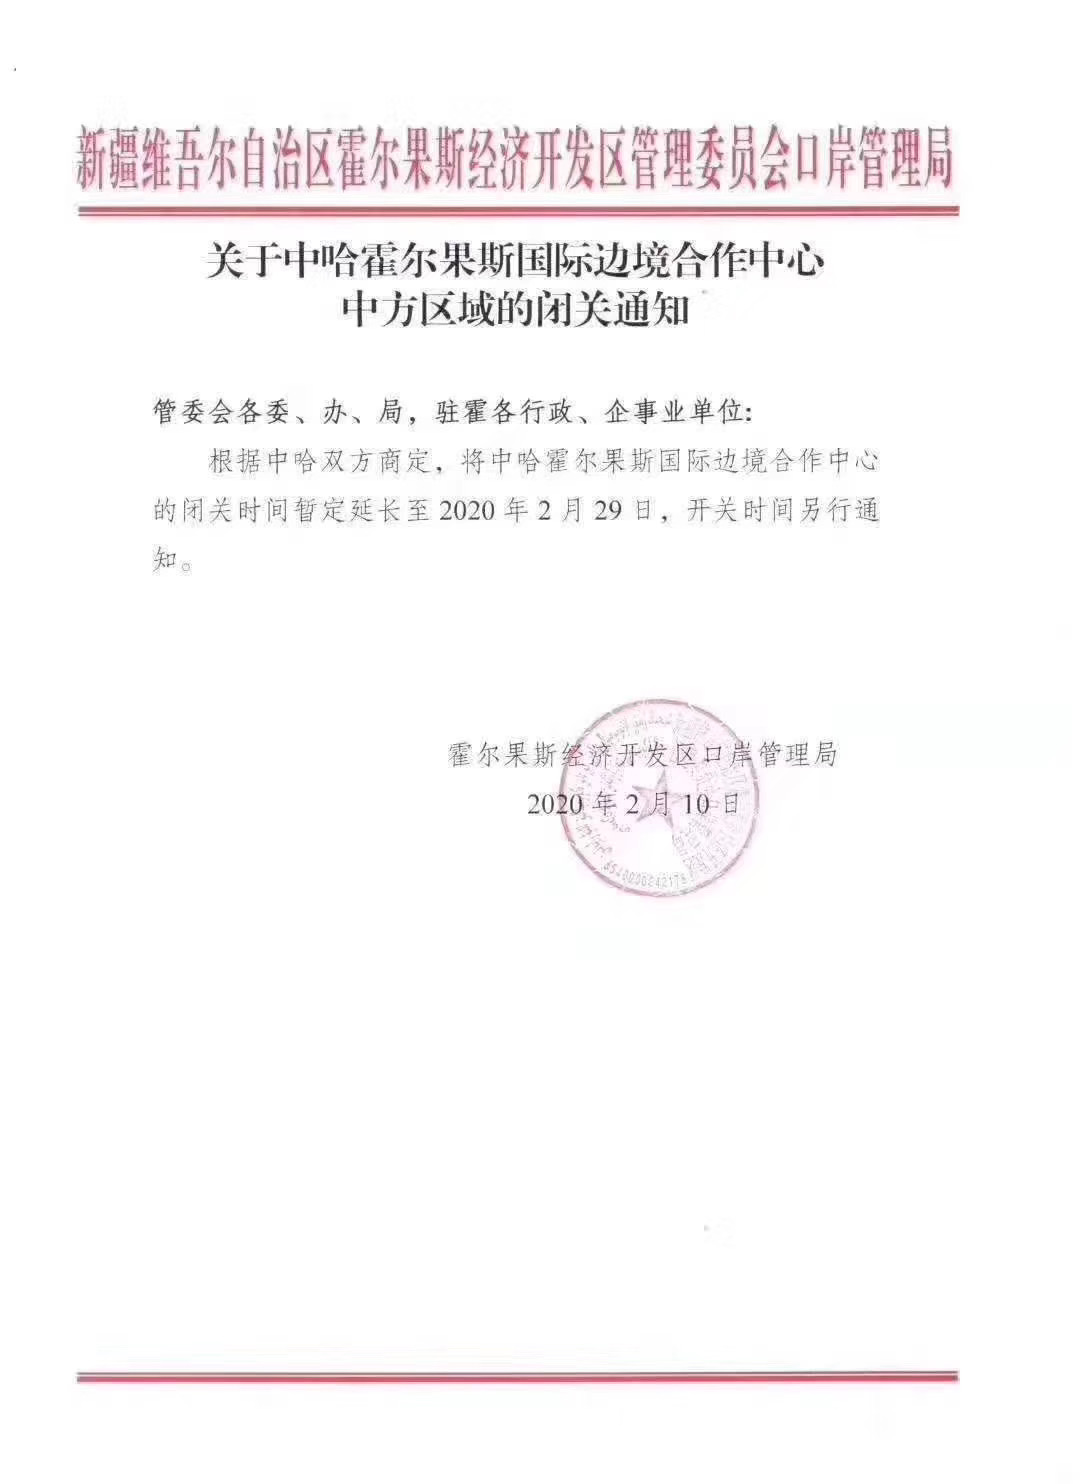 Отправка сборных грузов из Китая приостановлена до 29.02.2020